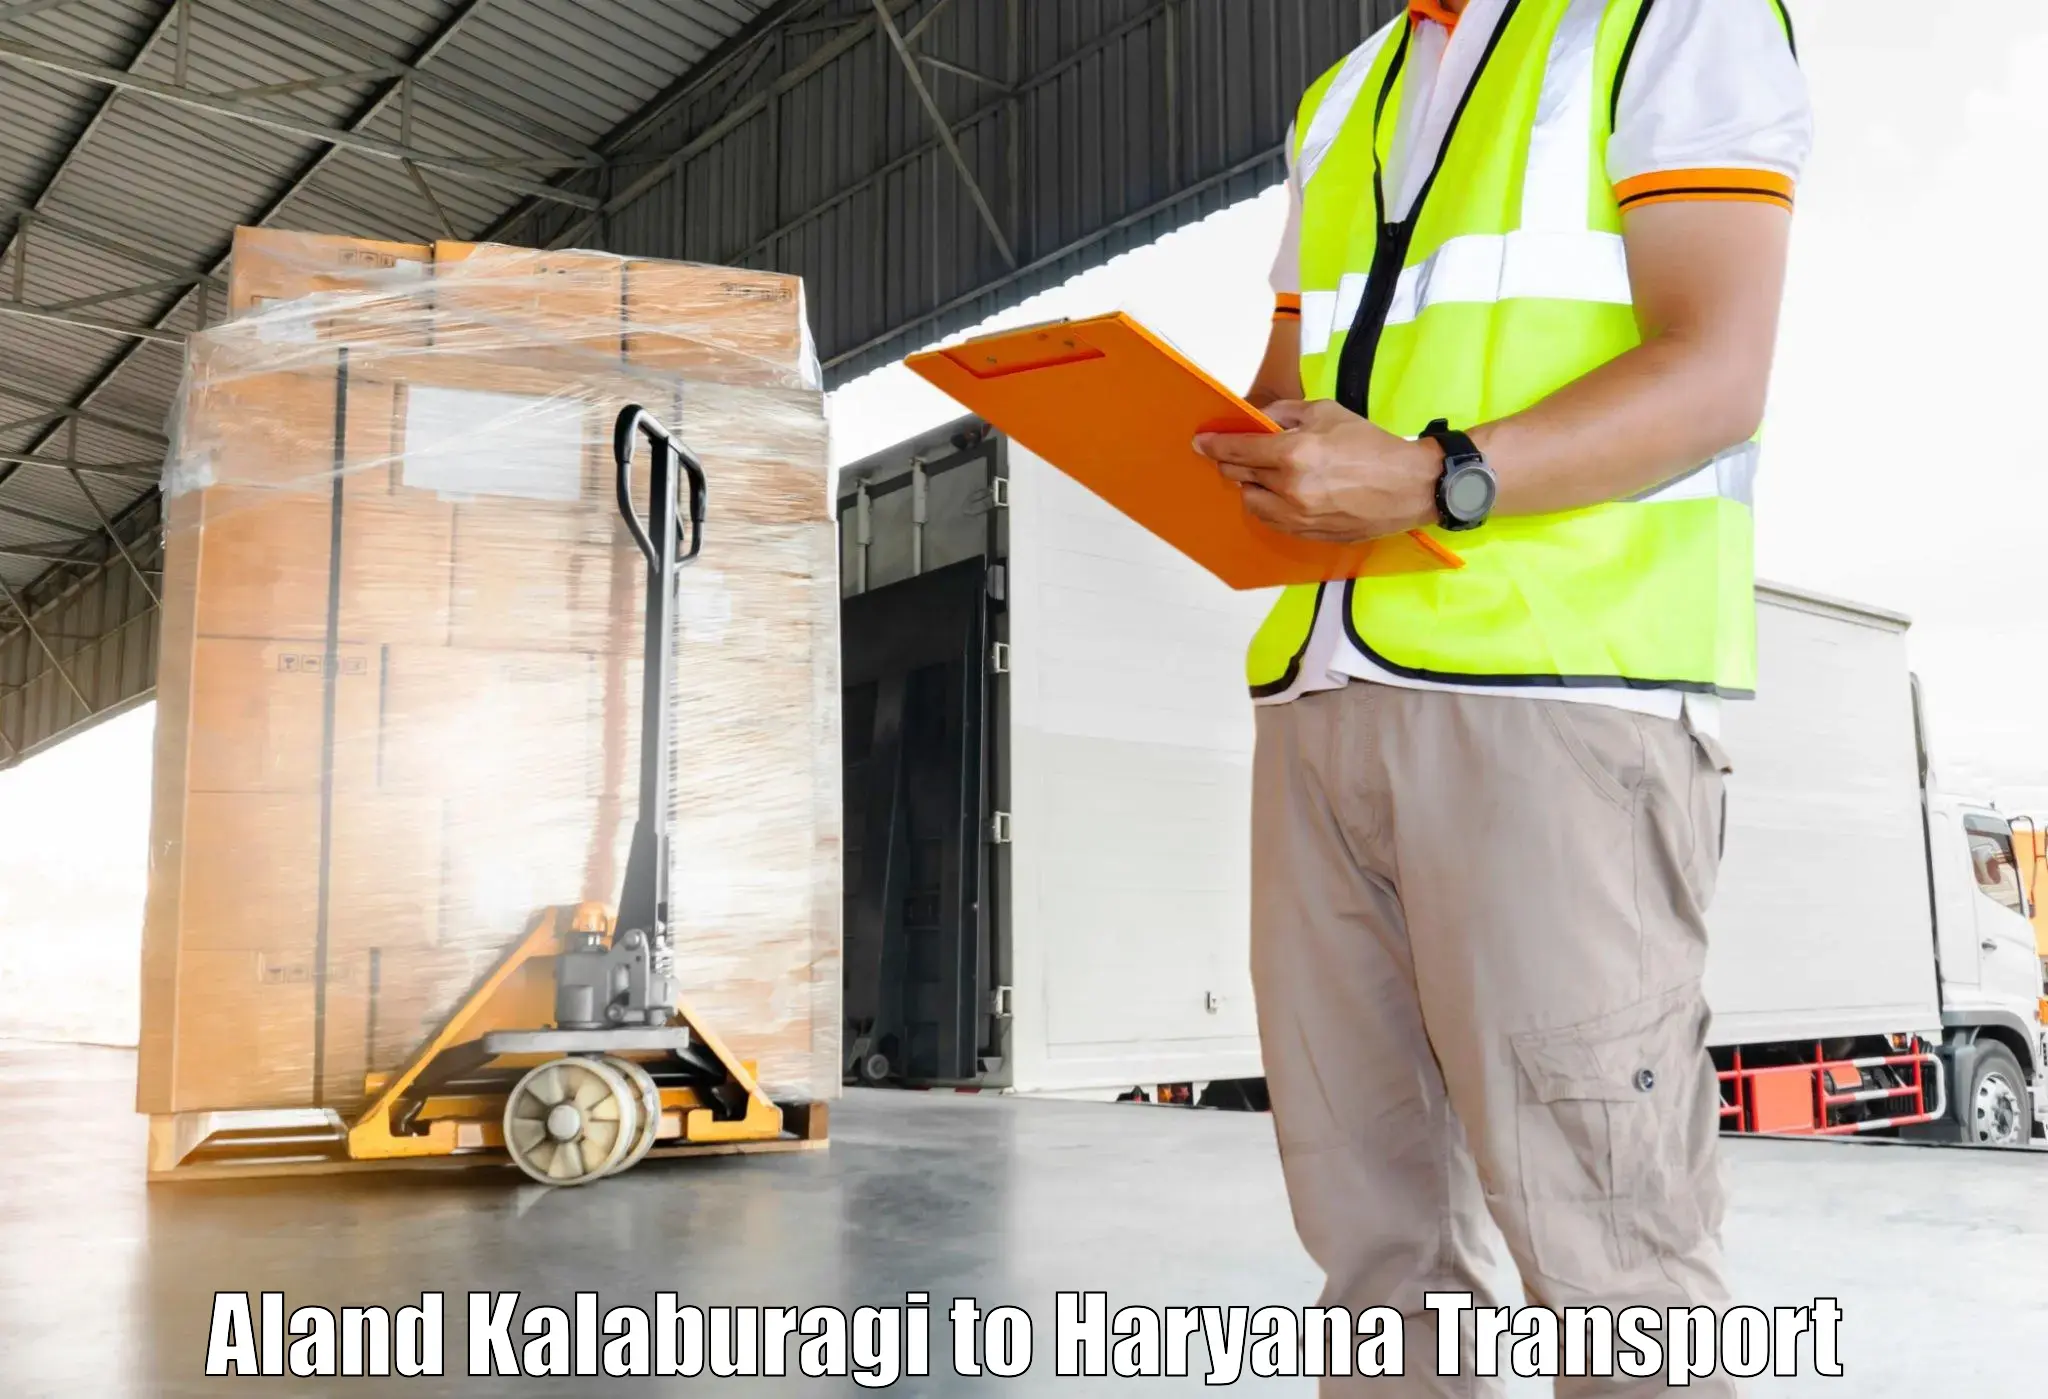 Delivery service Aland Kalaburagi to Hisar